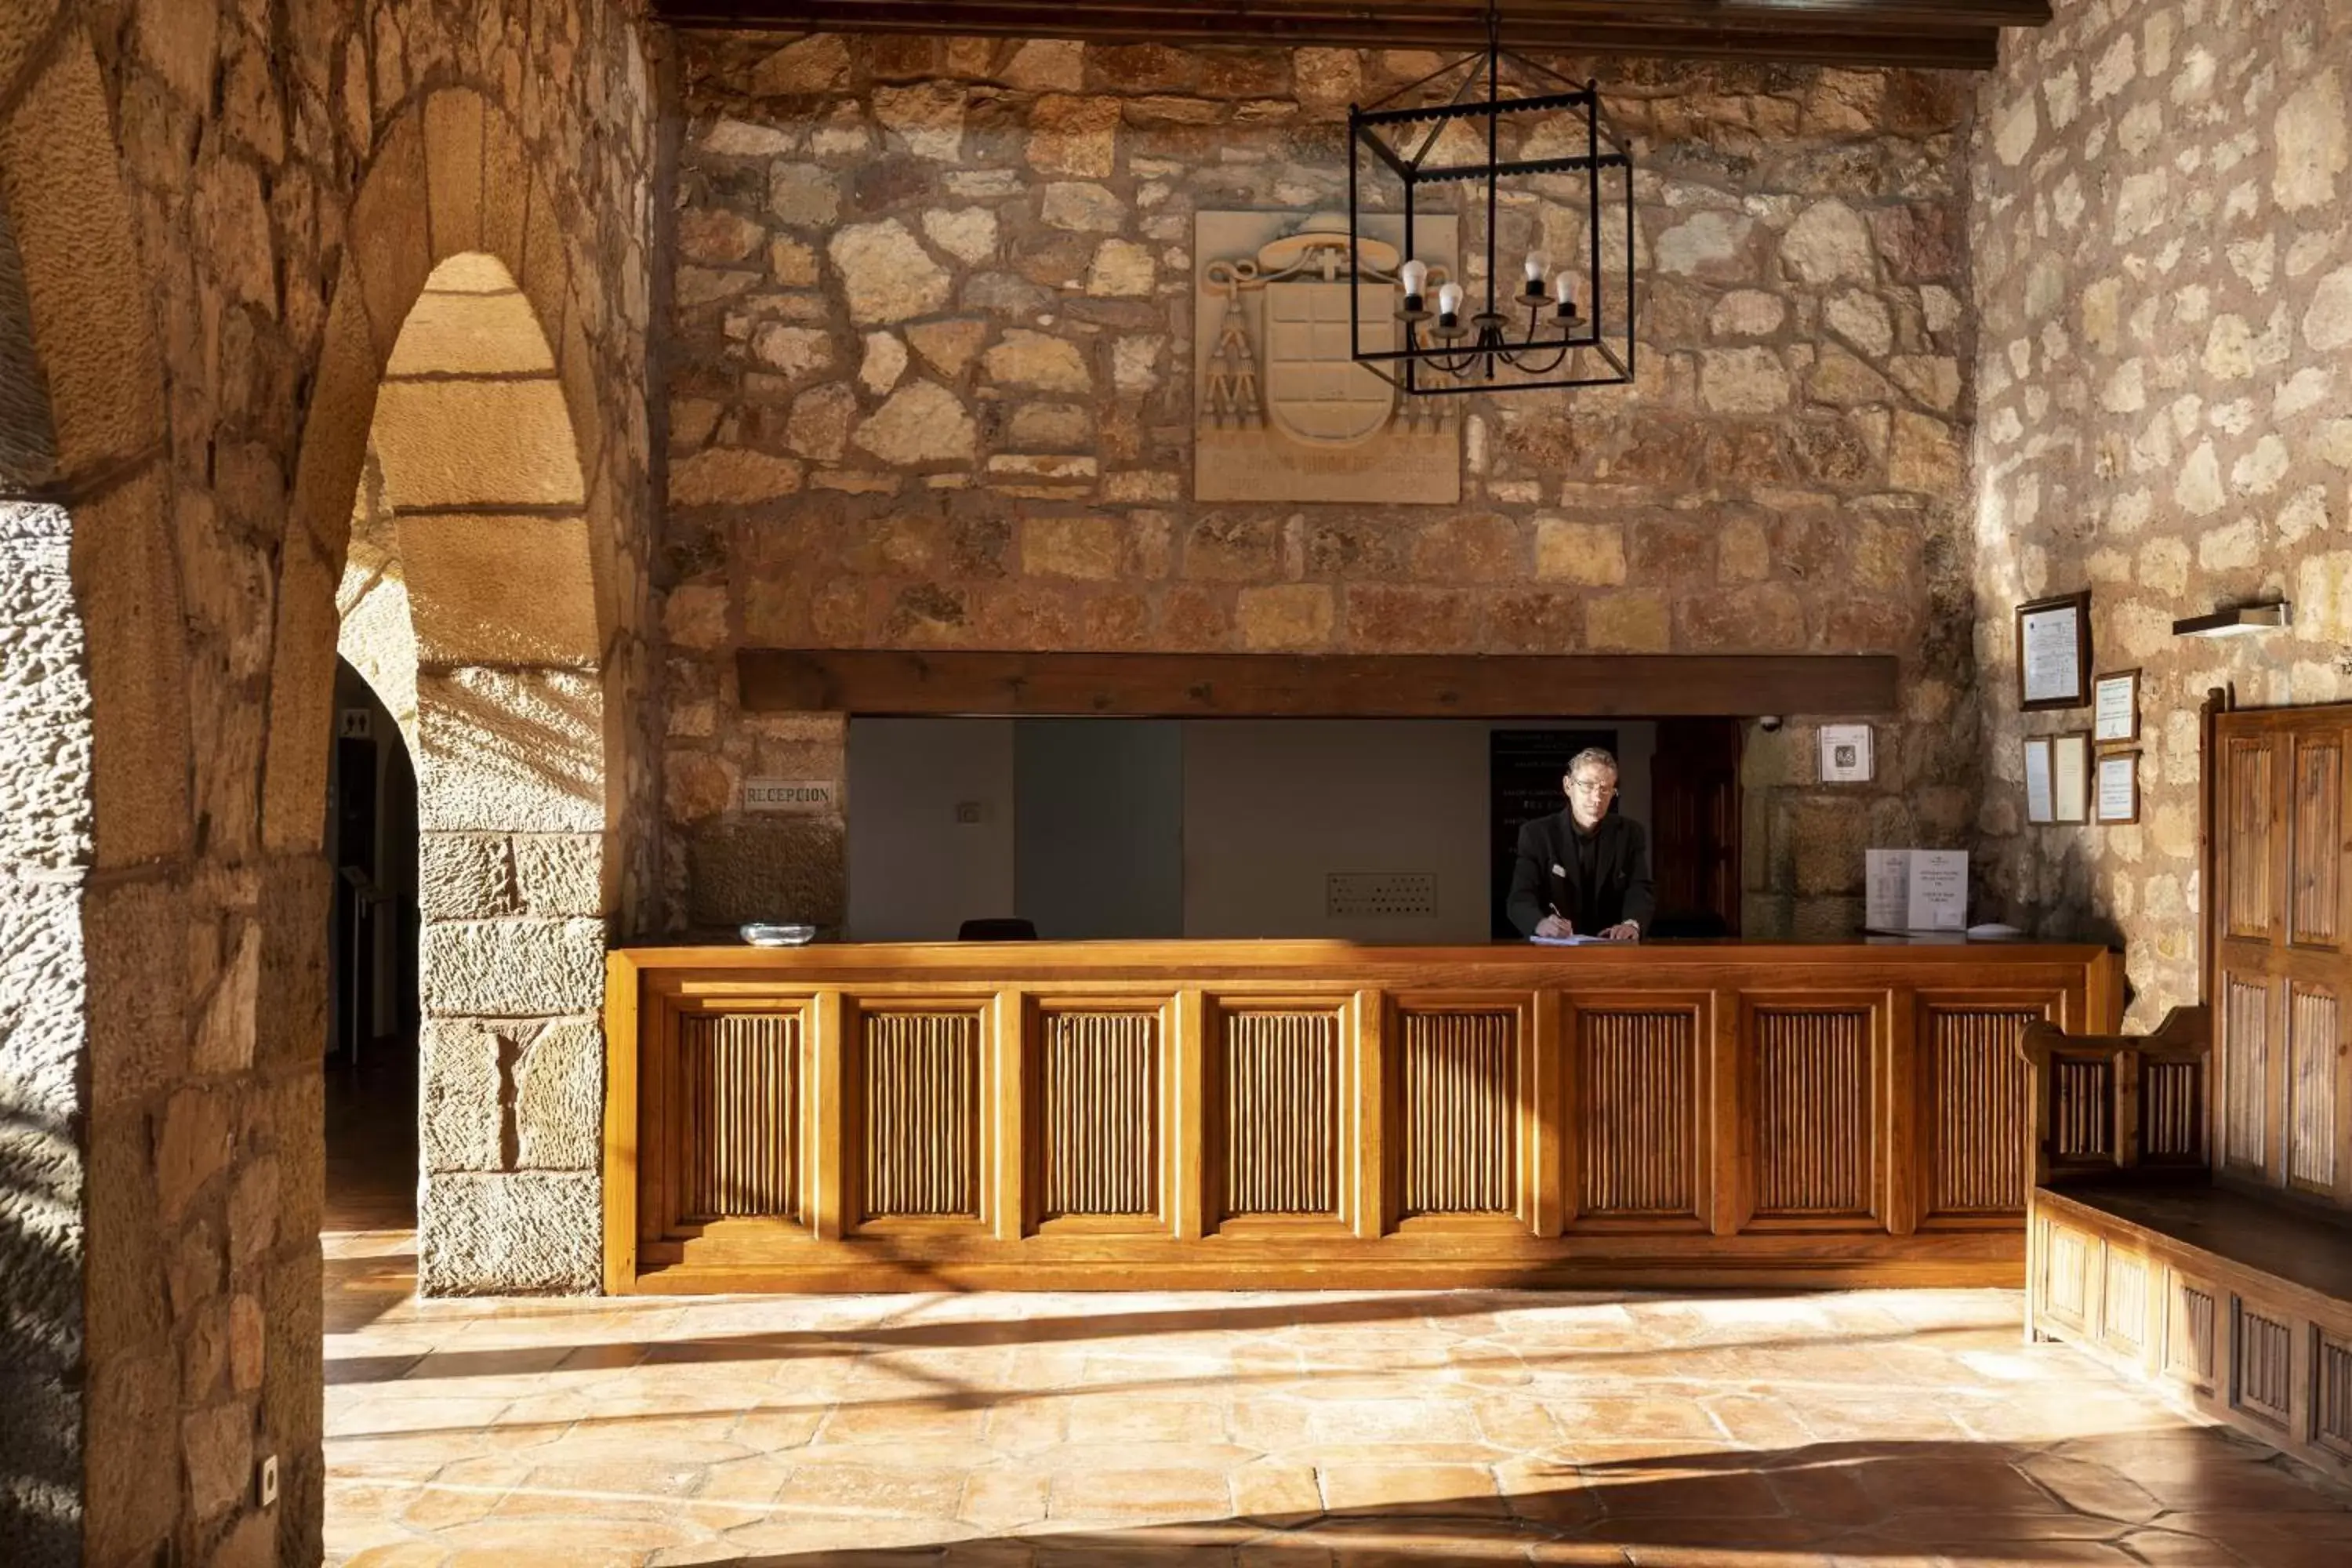 Lobby or reception, Lobby/Reception in Parador de Siguenza